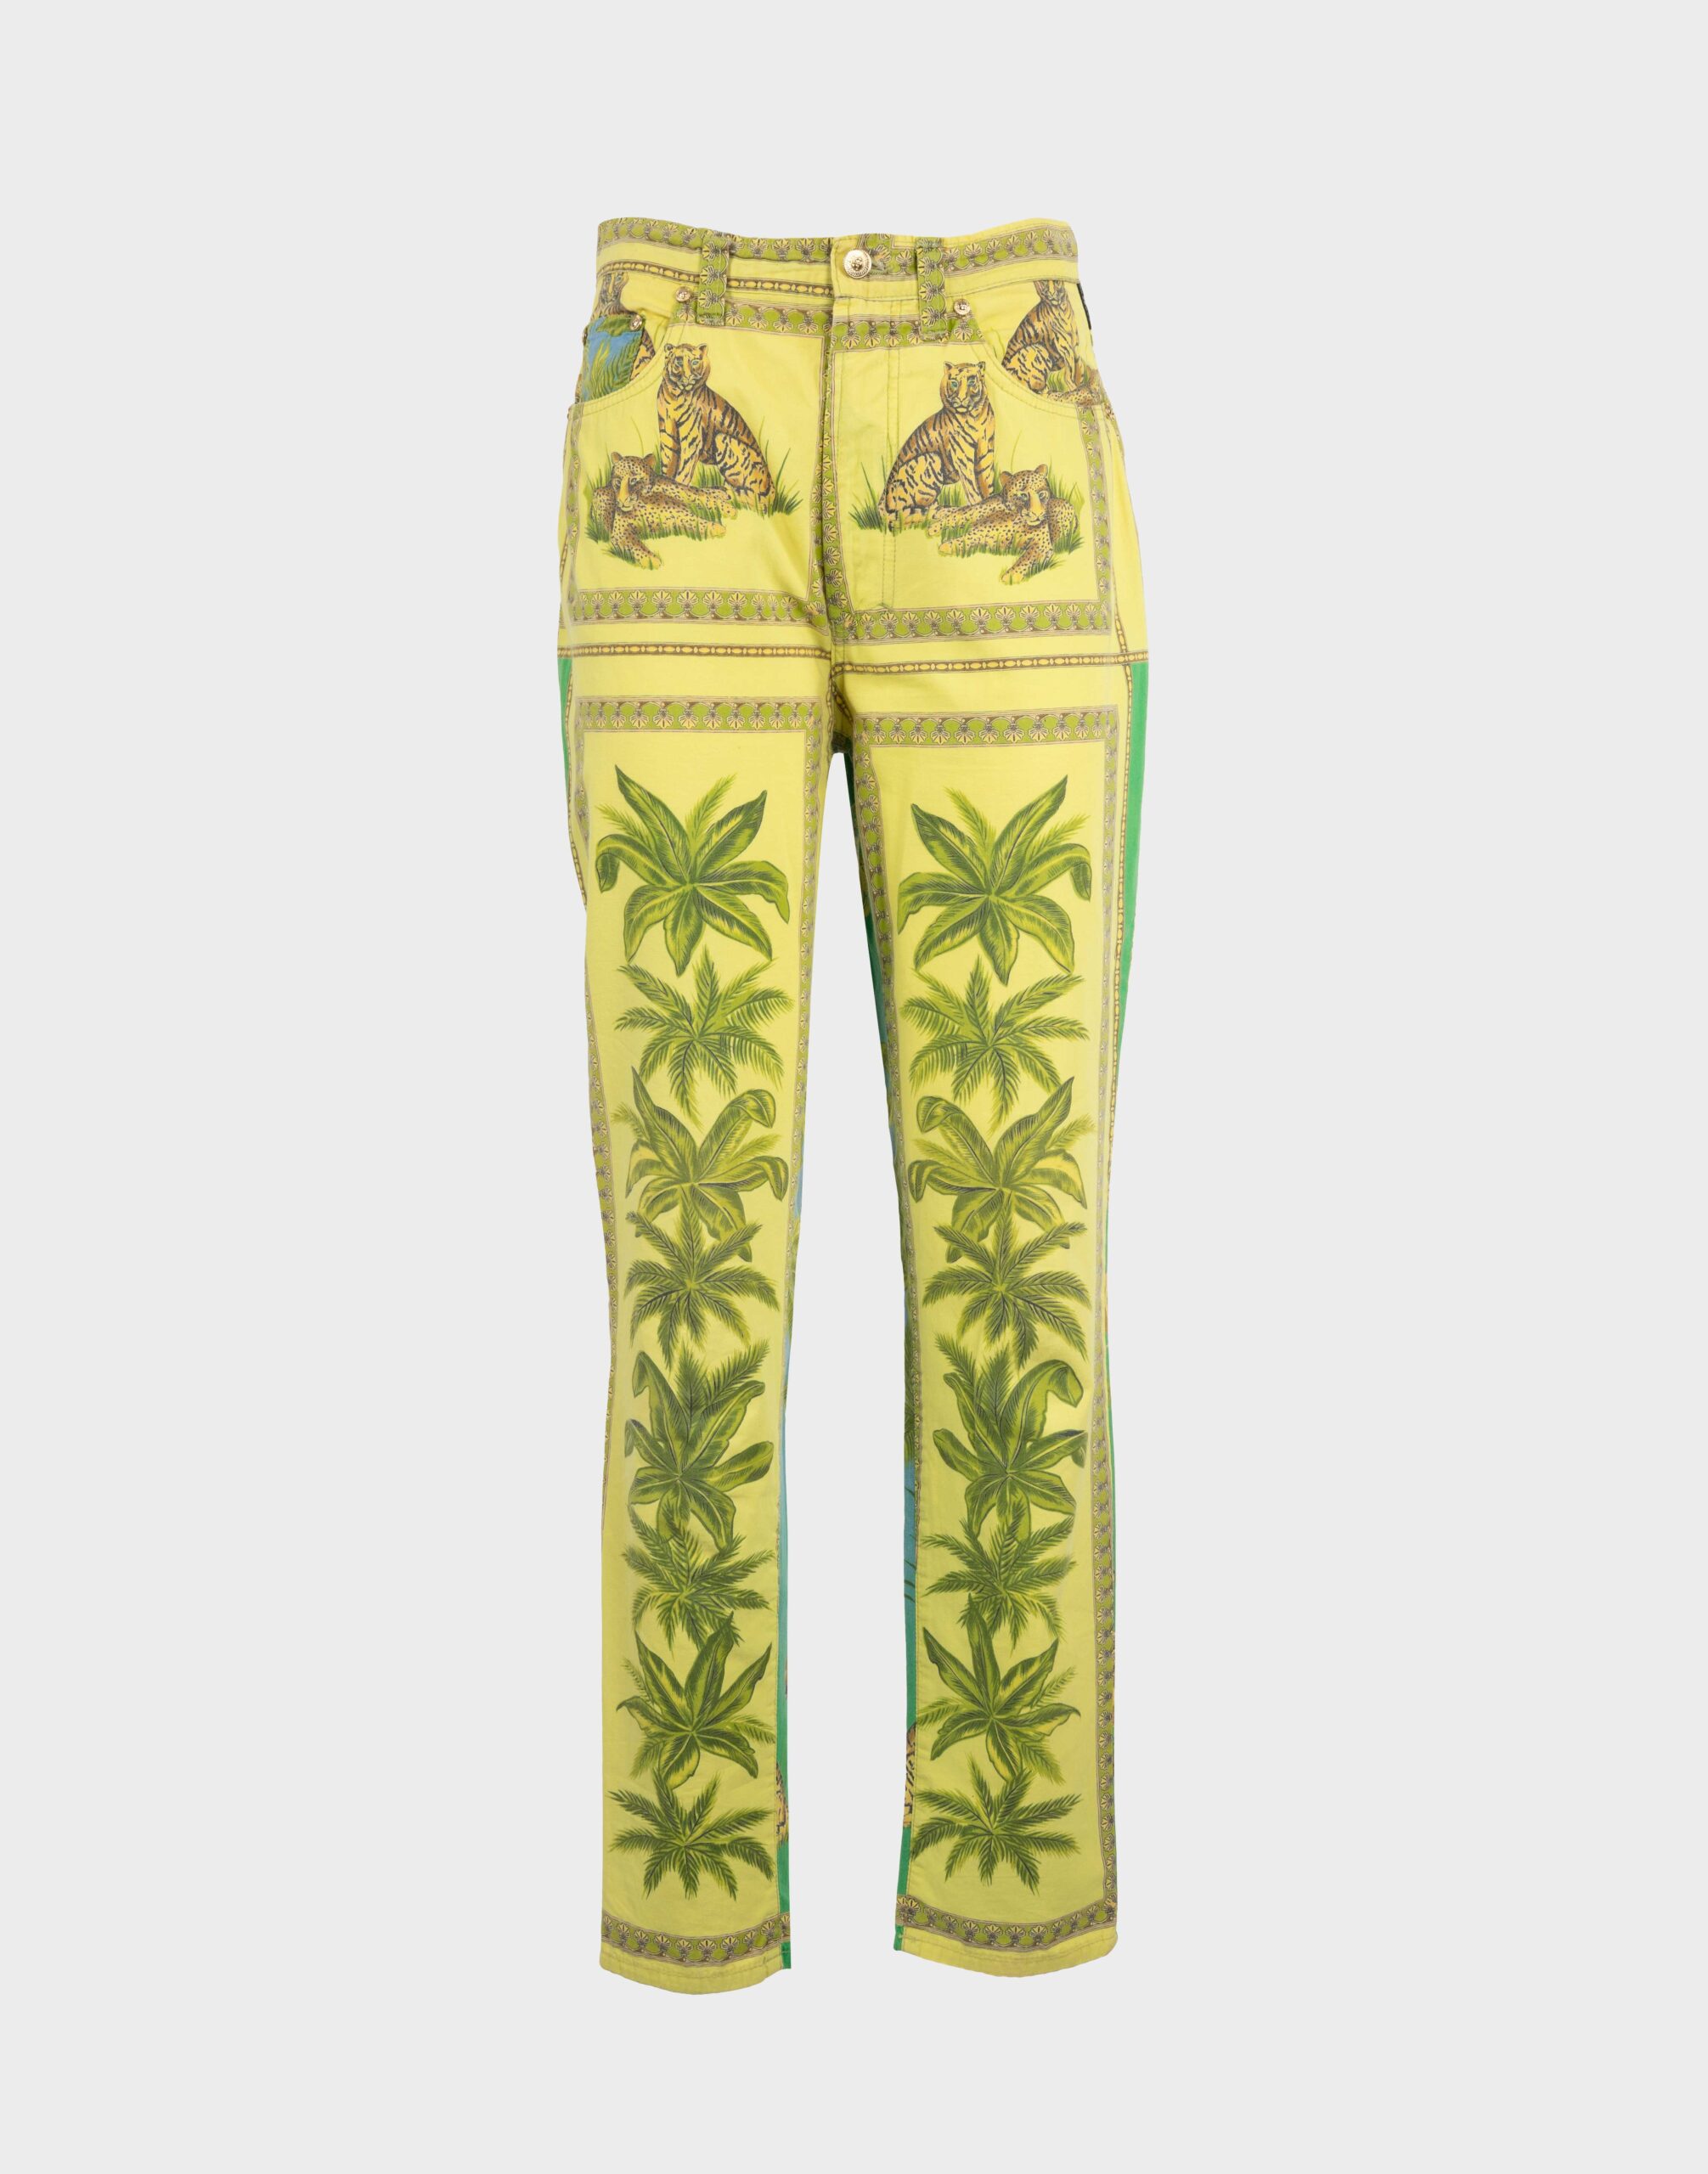 pantaloni da donna a vita alta gialli e verdi con fantasia di palme e tigri